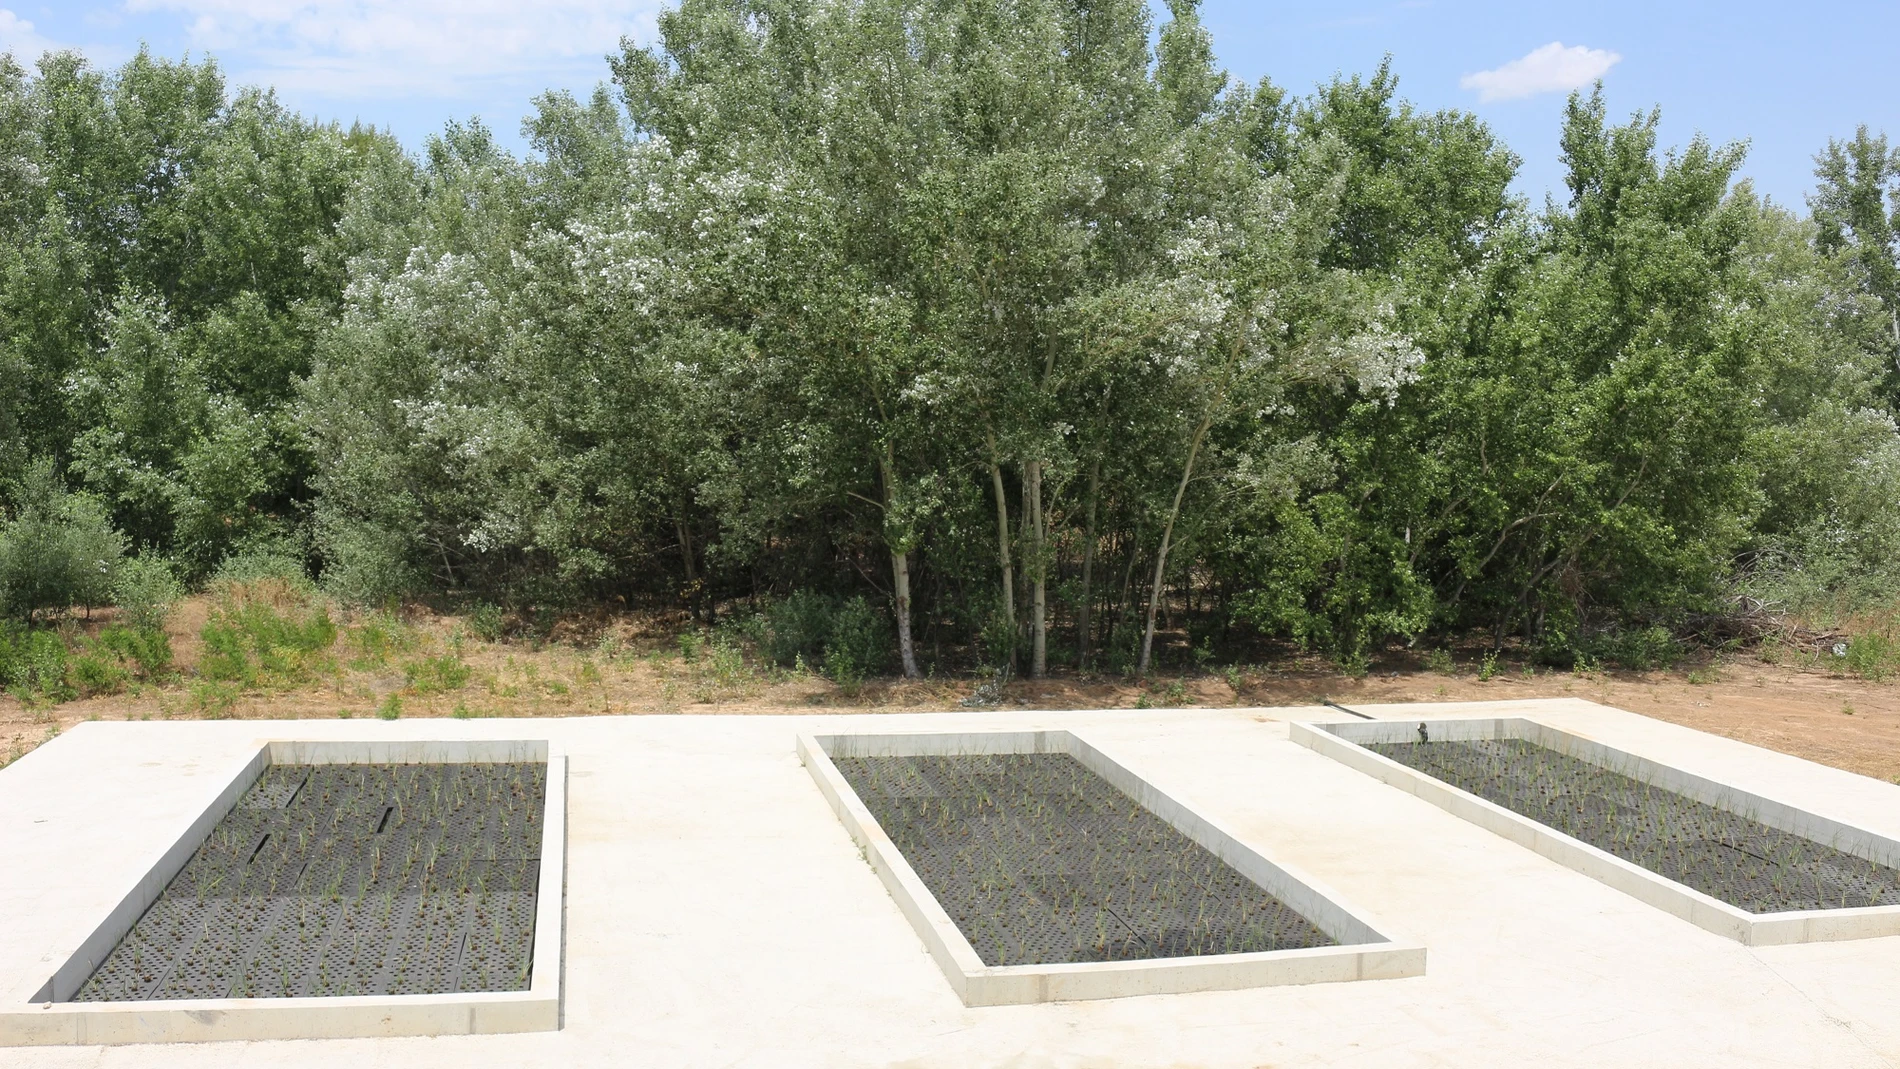 Proyecto piloto de la Comunidad de Madrid para depurar las aguas con plantas vegetales con capacidad para eliminar la contaminación de las aguas